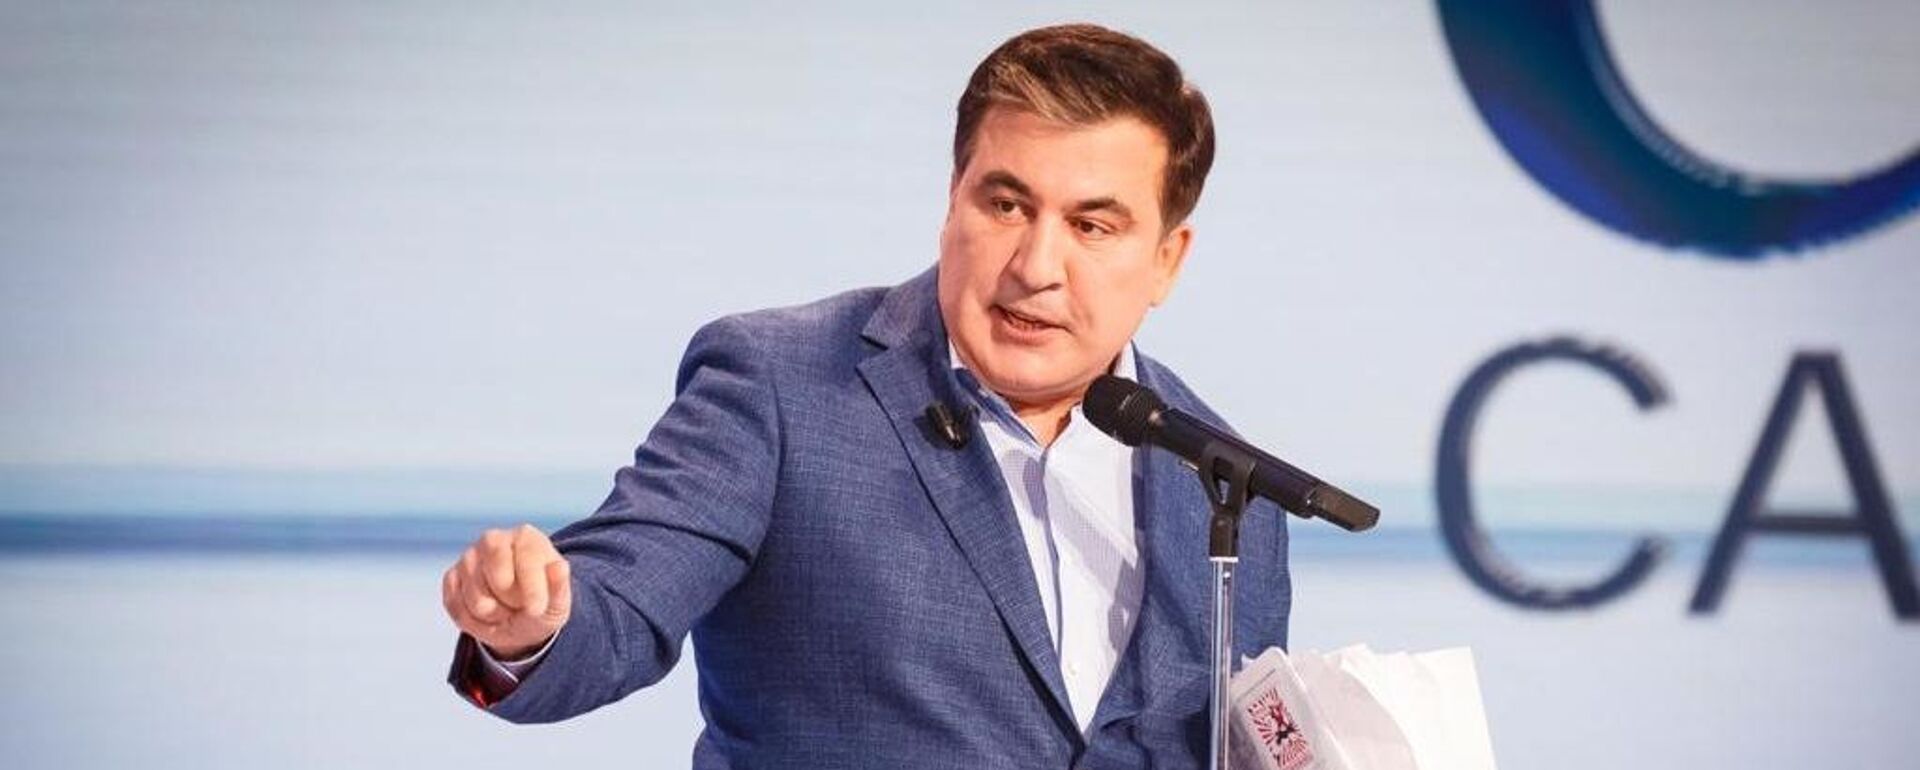 Лидер политической партии Движение новых сил Михаил Саакашвили - Sputnik Грузия, 1920, 16.09.2021